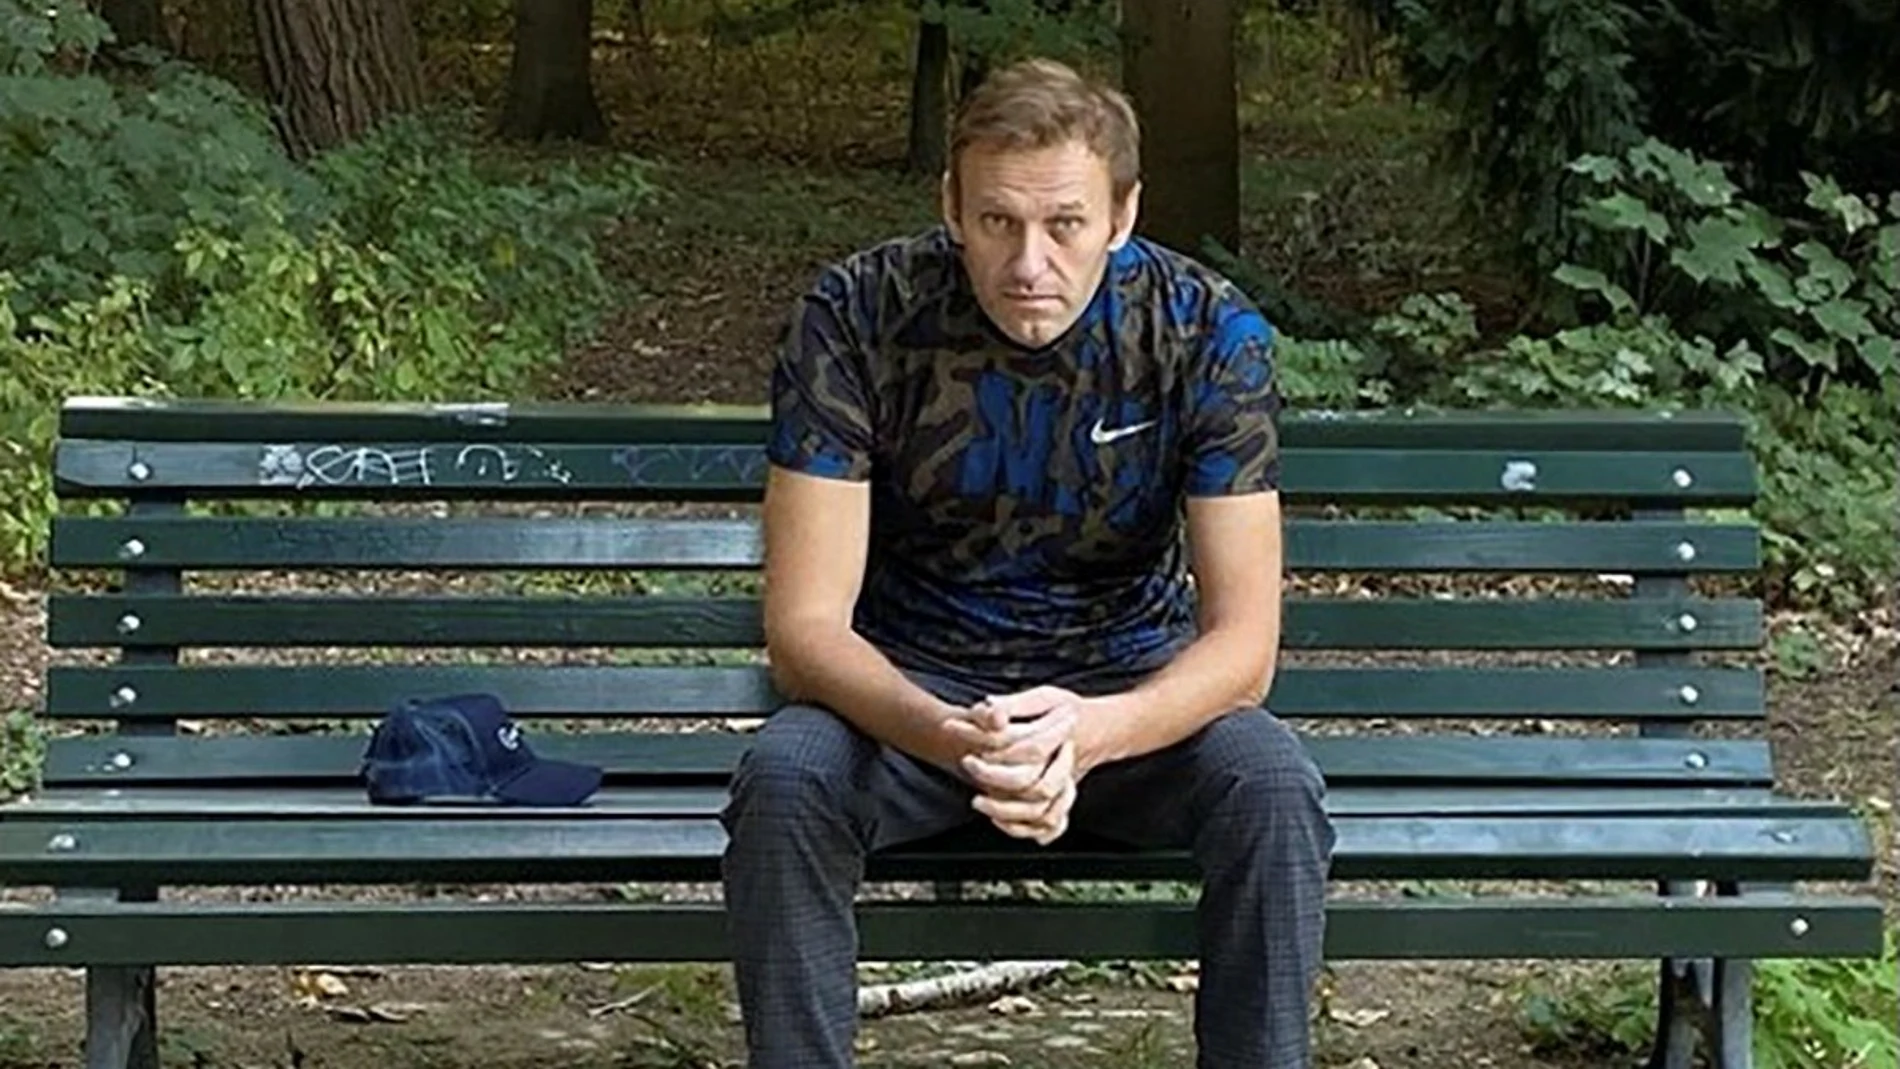 El opositor ruso Alexei Navalni ha colgado una foto suya sentado en un banco de Berlín tras recibir el alta hospitalaria